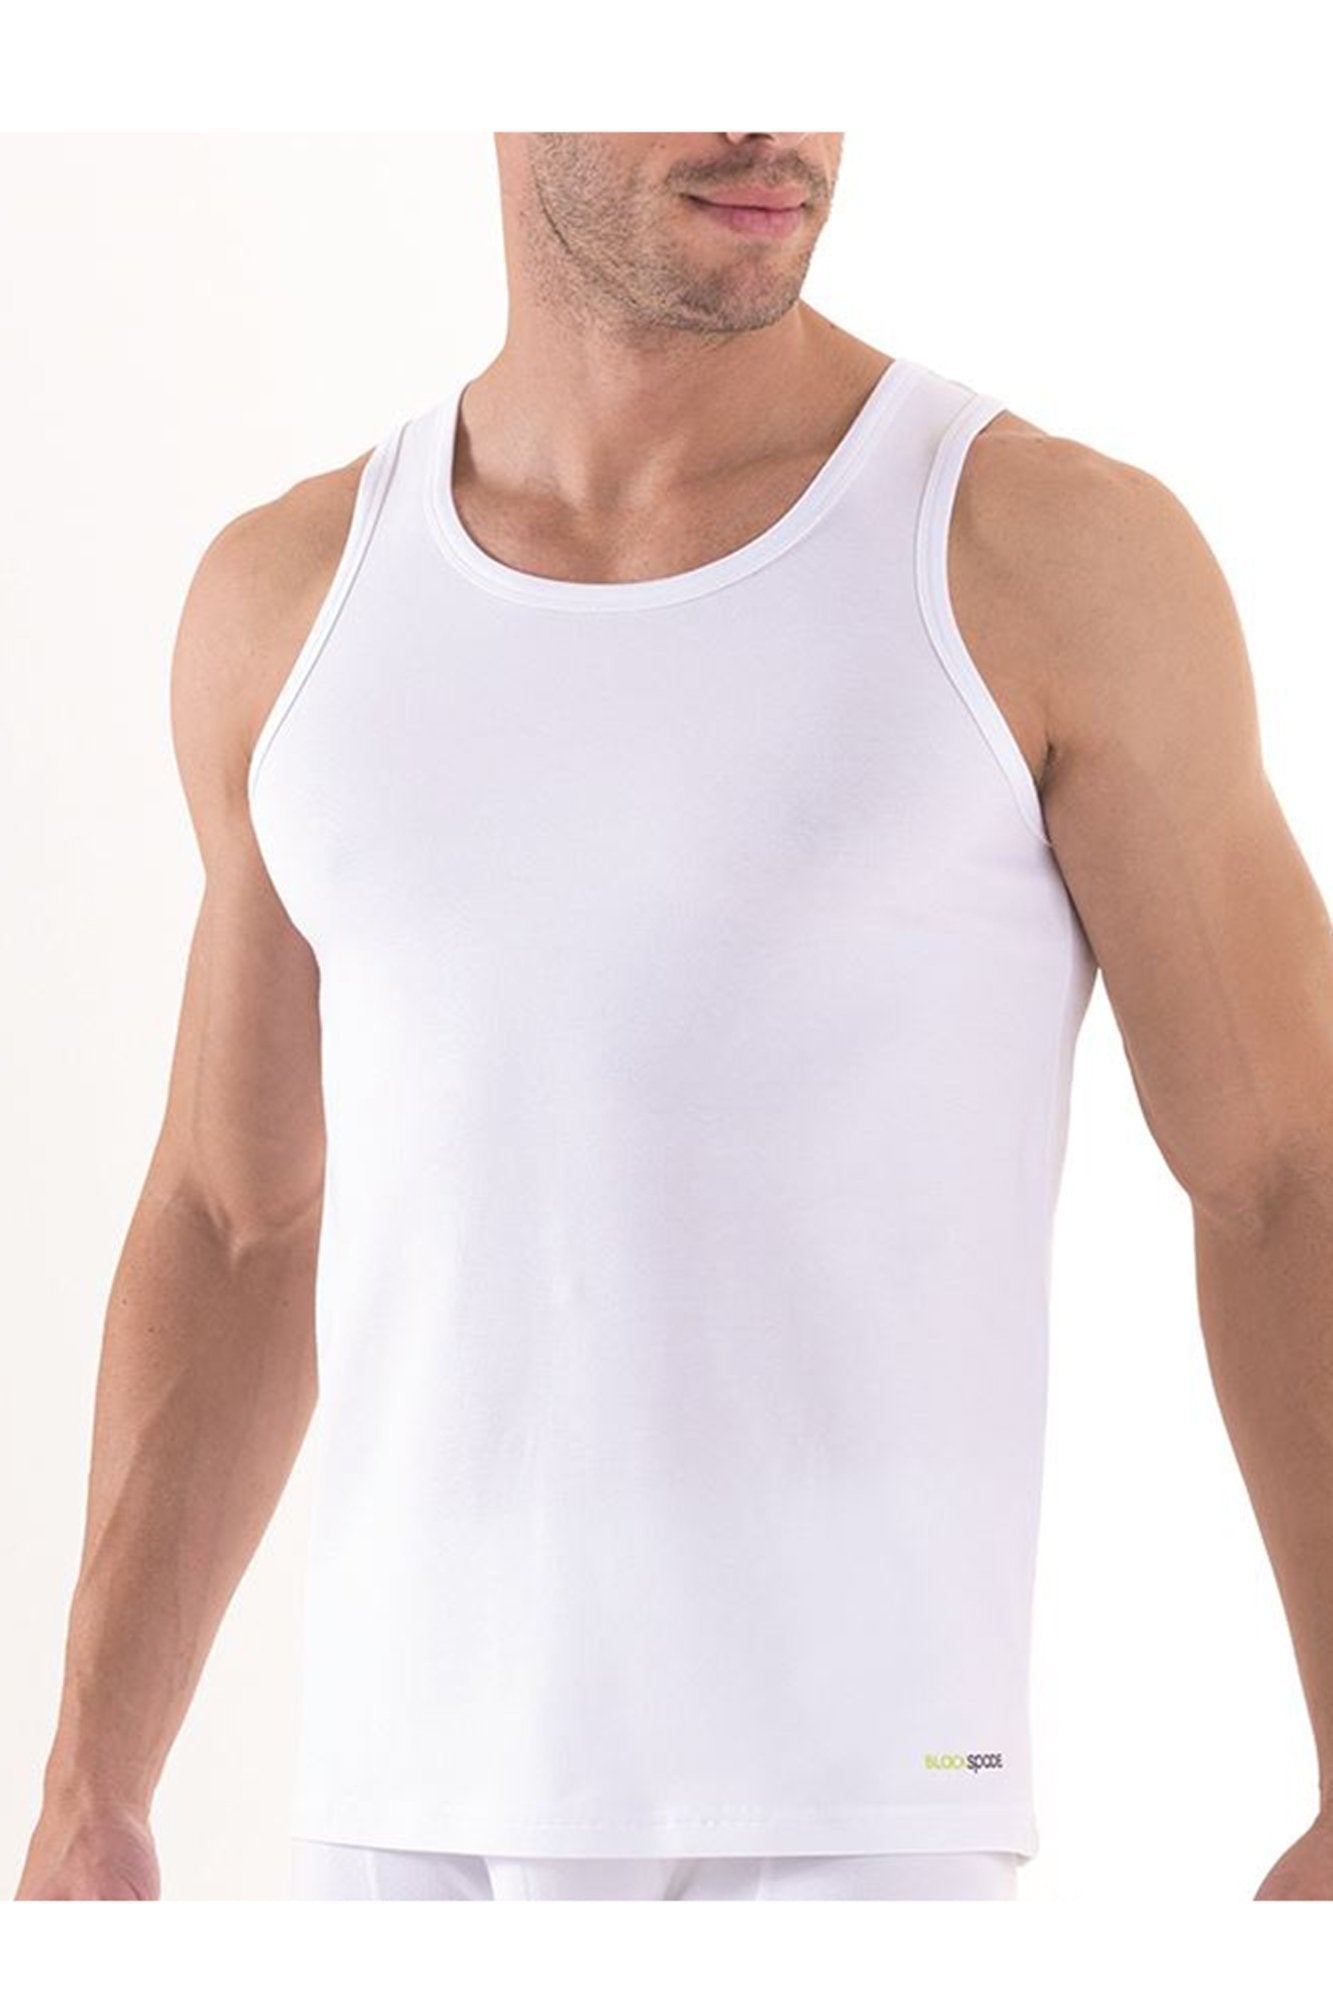 Mens' Singlet underwear blackspade White L 95% Cotton 5% Elastane